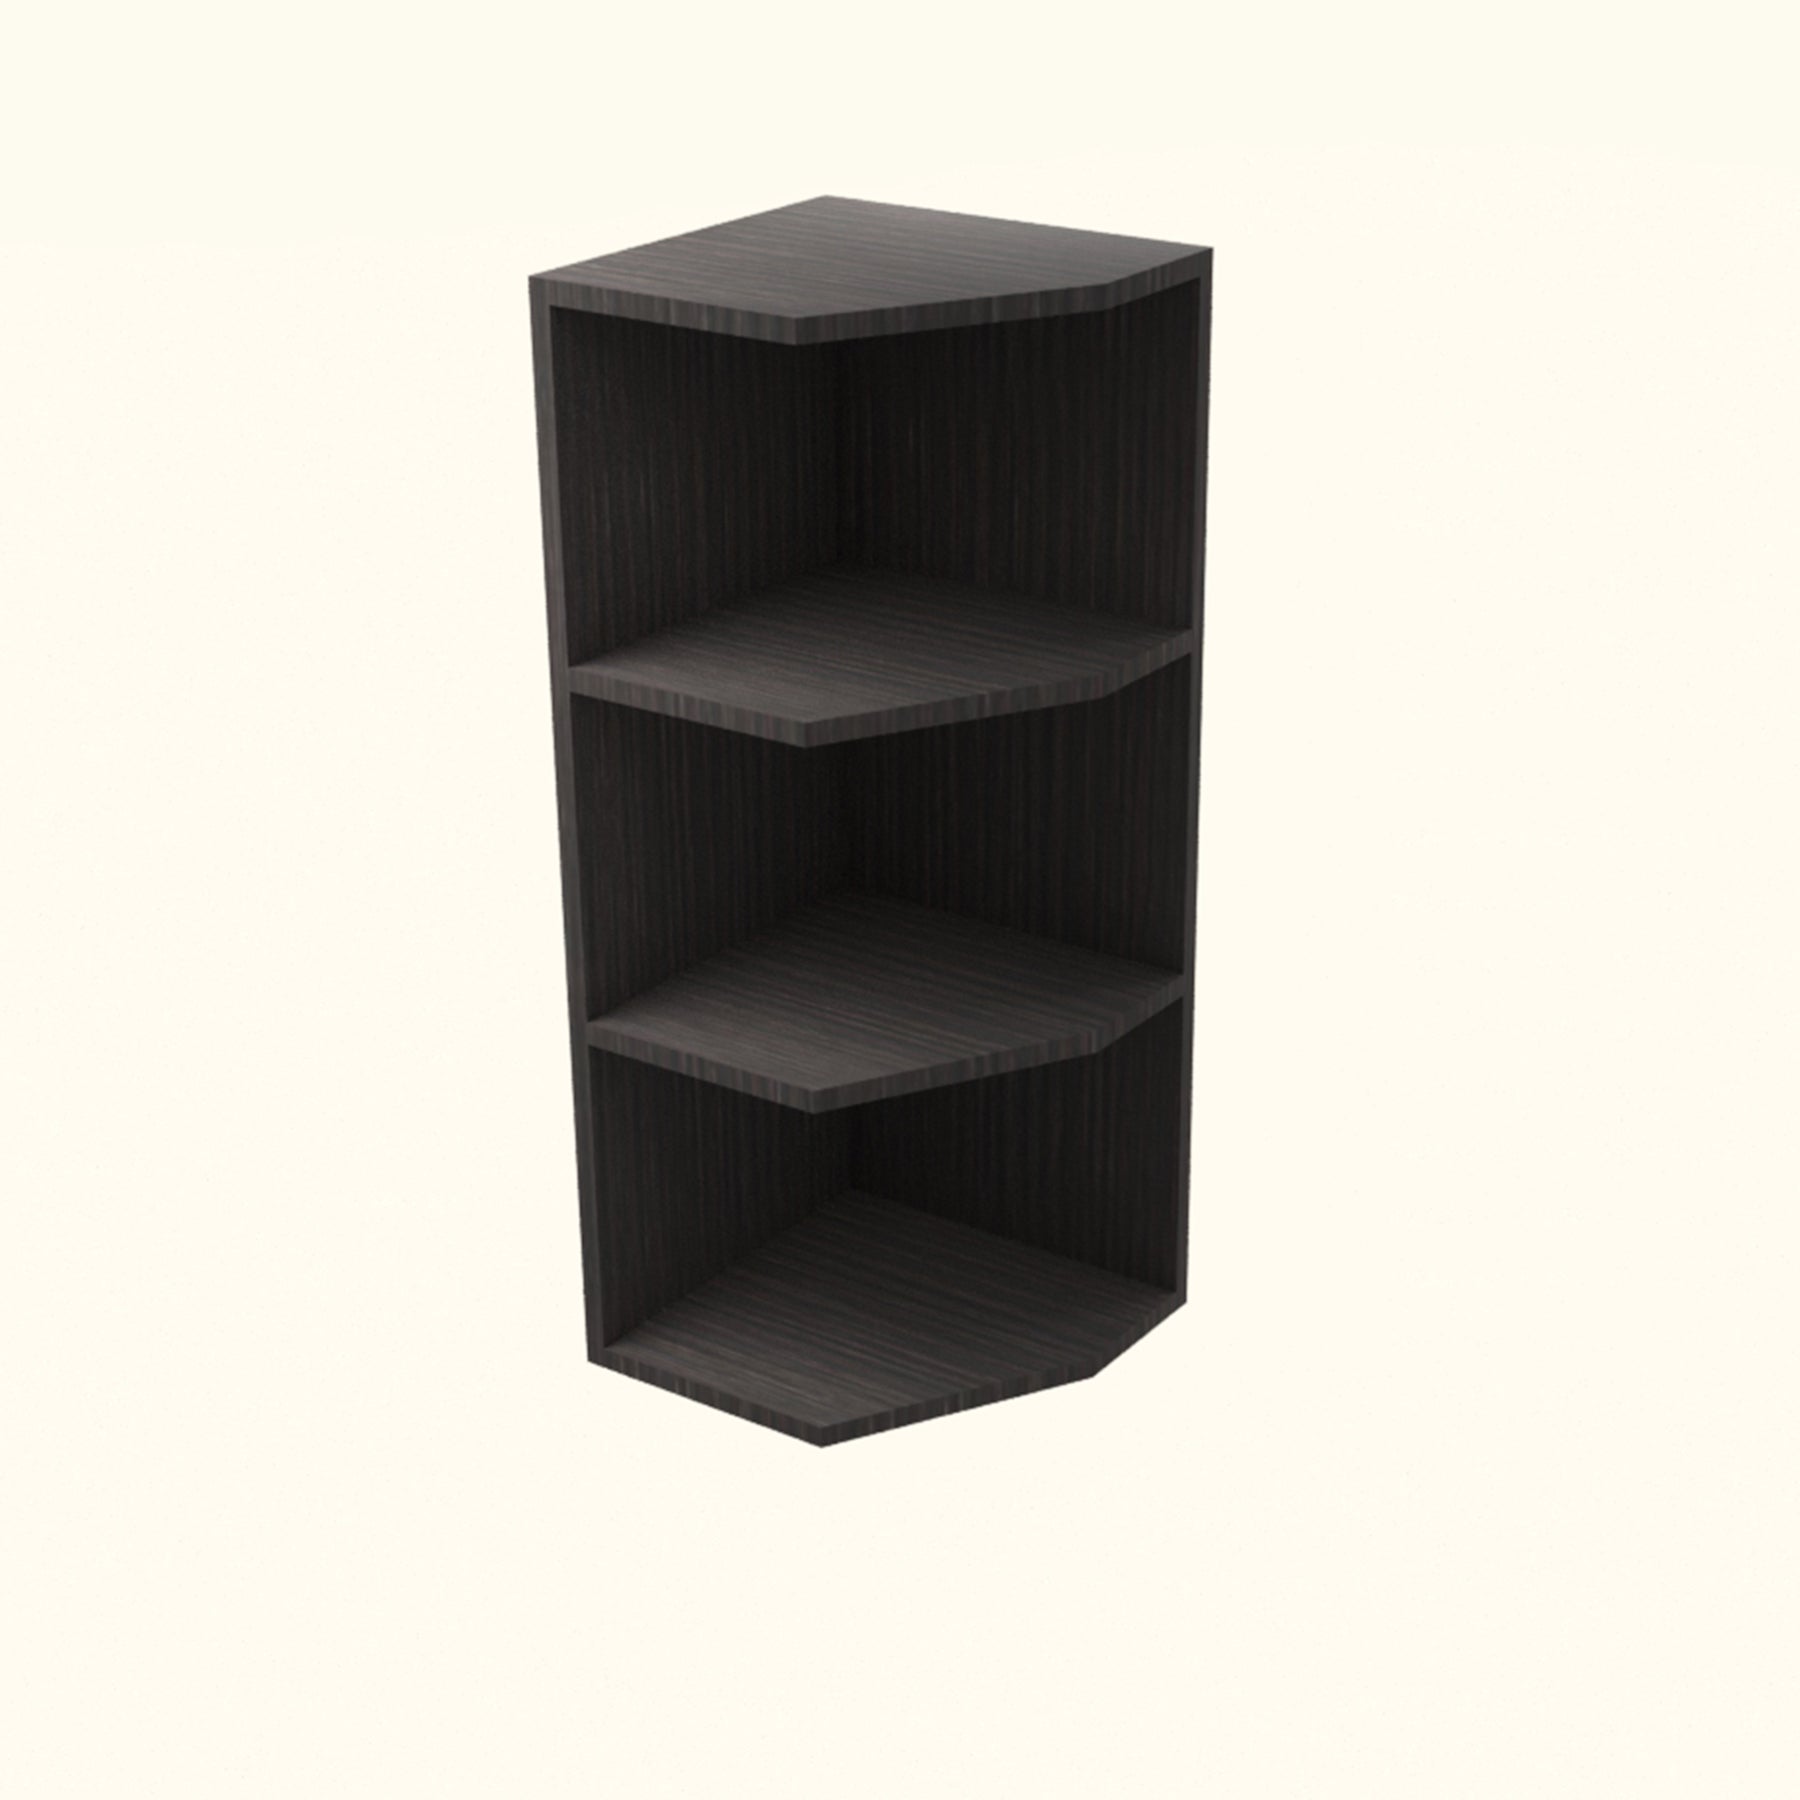 RTA - Brown Oak - End Wall Shelf Base Cabinets | 12"W x 30"H x 12"D